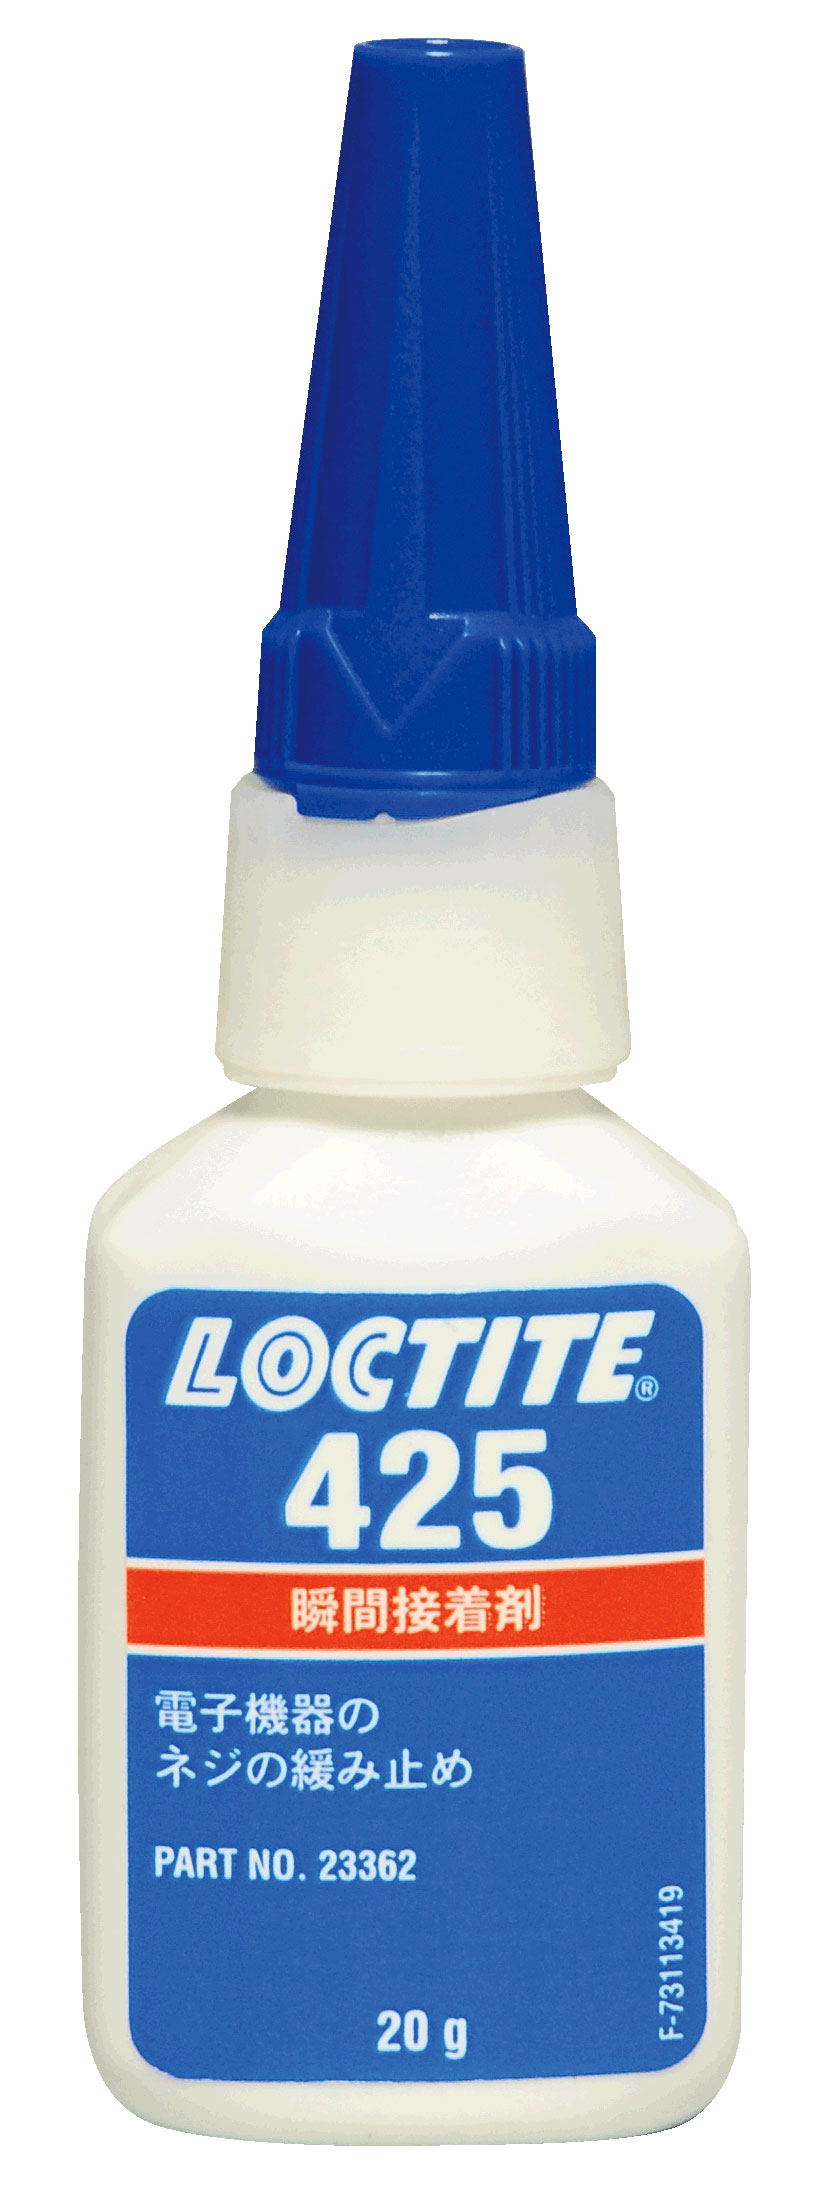 Loctite Screw Loosening Prevention Adhesive for Plastic Screws 425